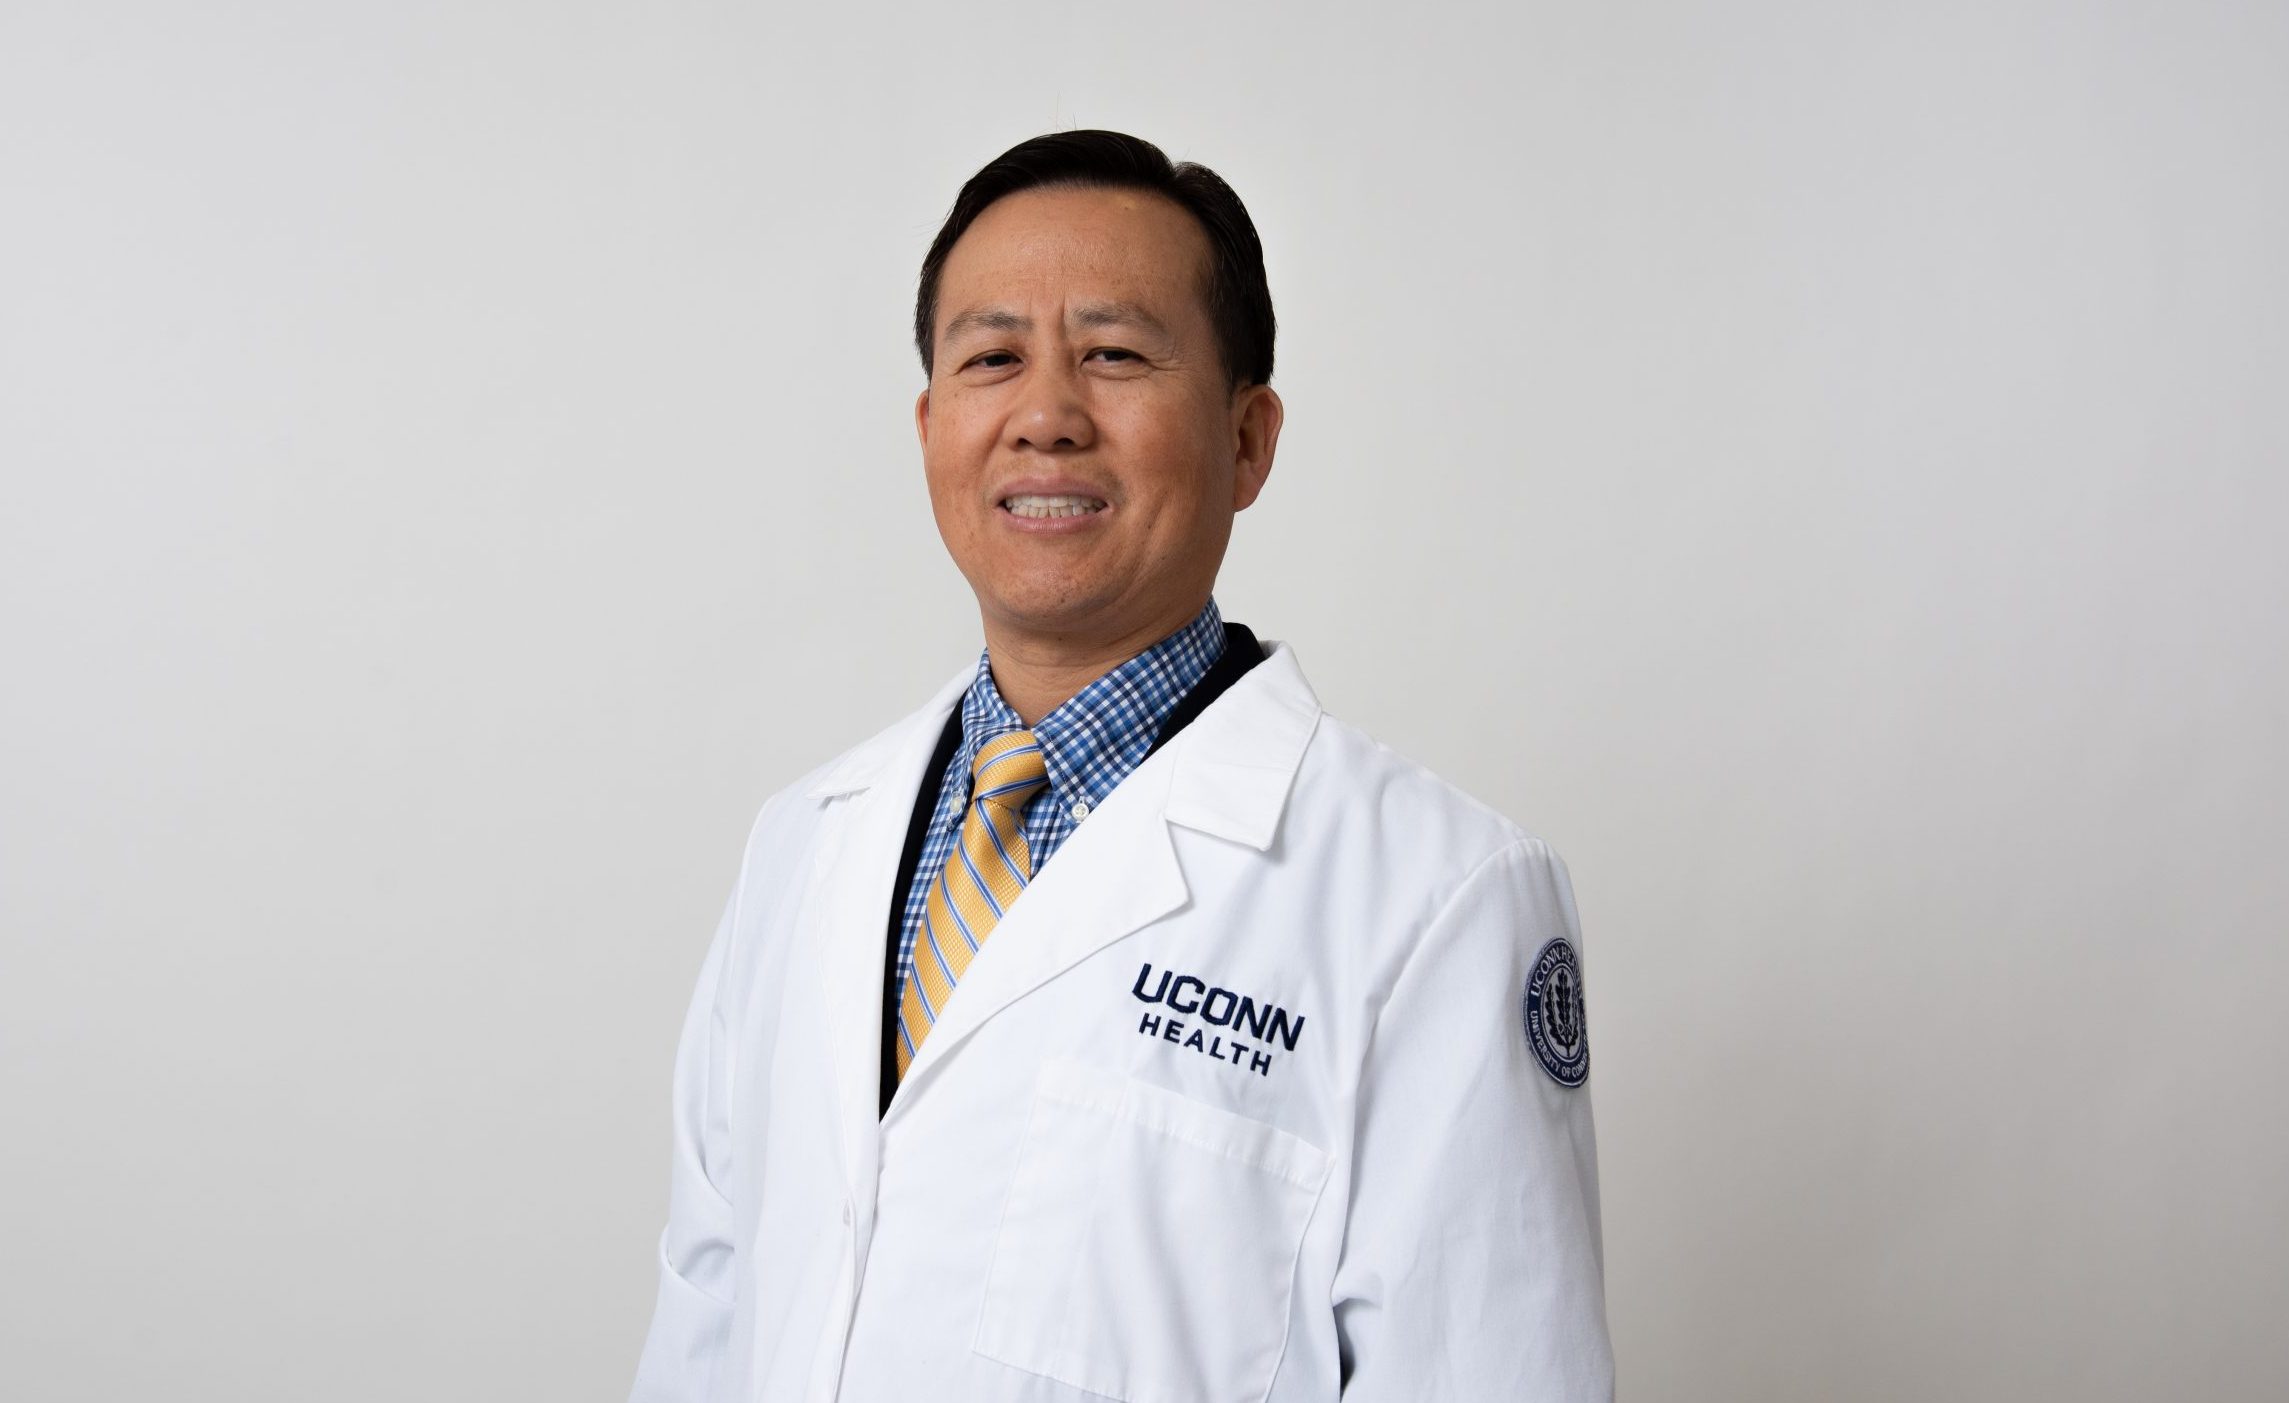 Dr. Yanlin Wang